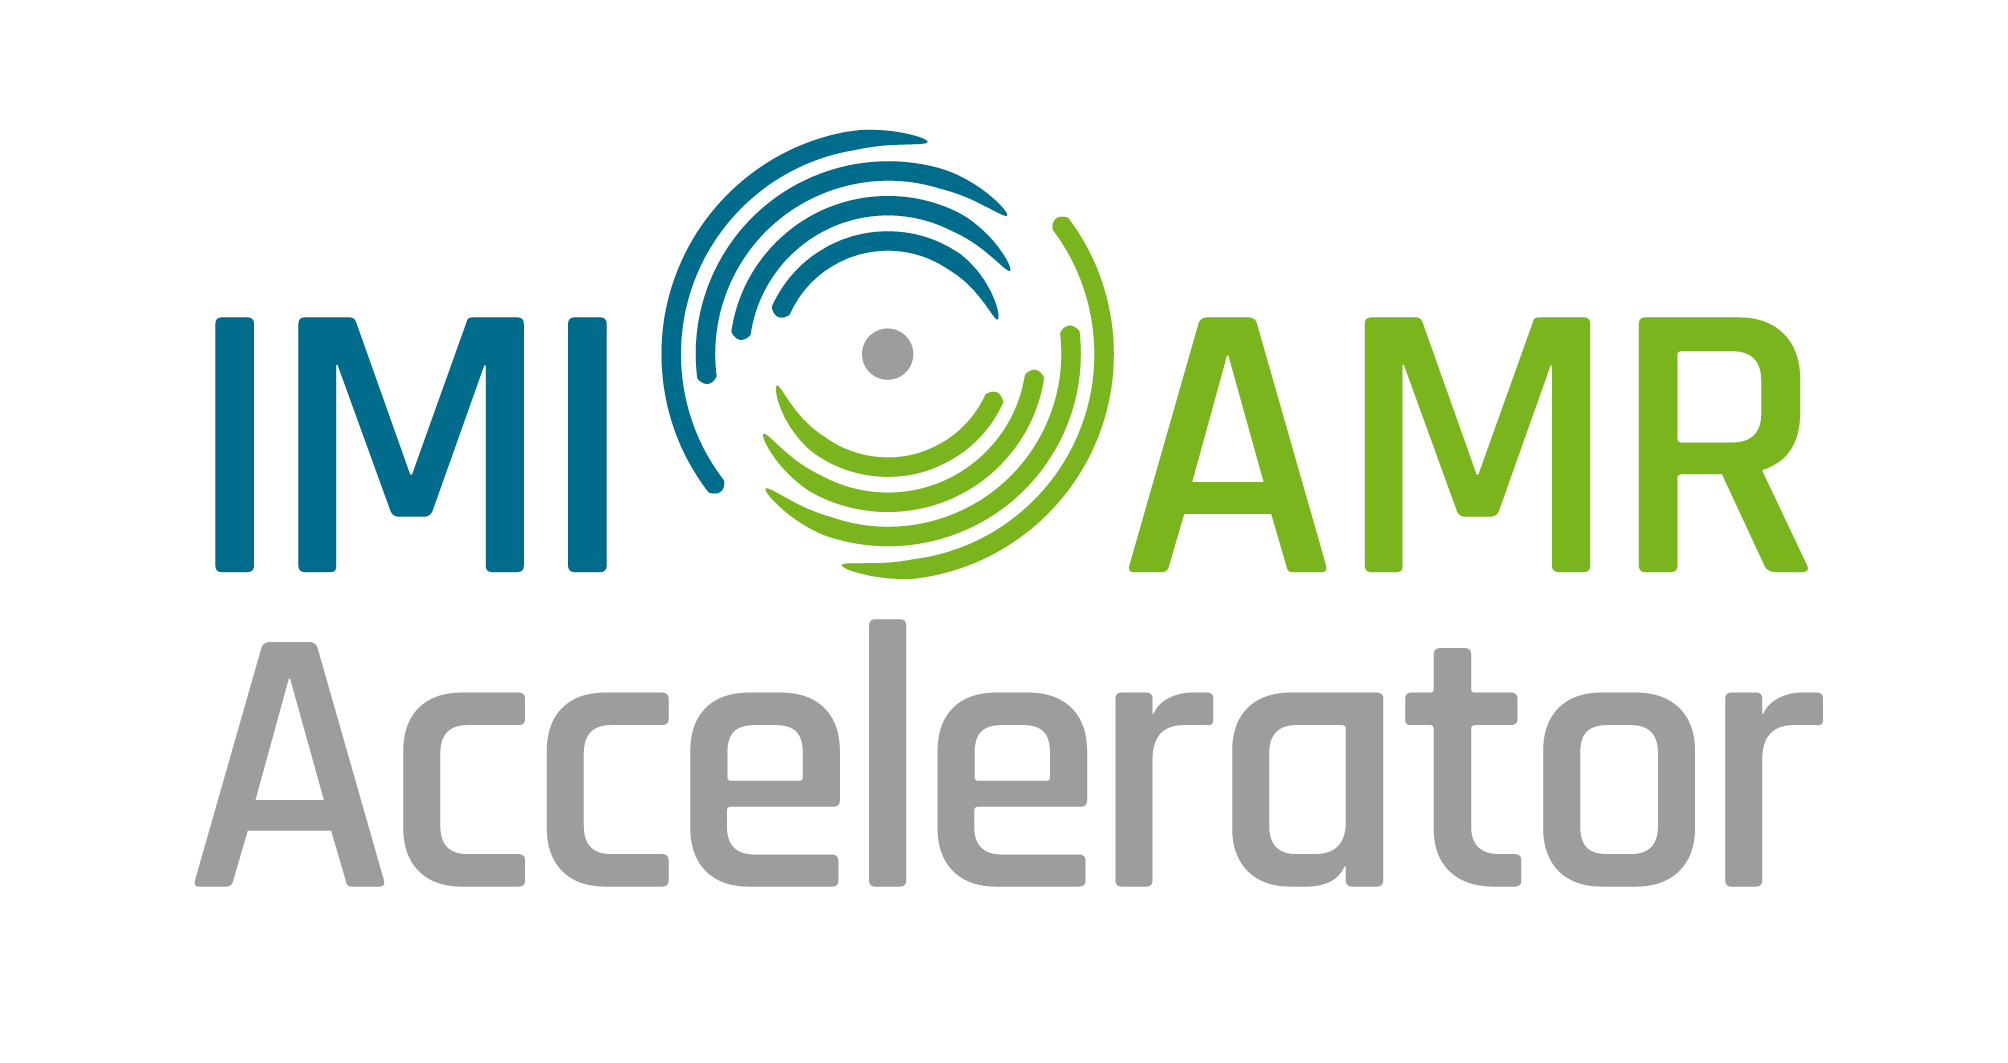 AMR Accelerator logo